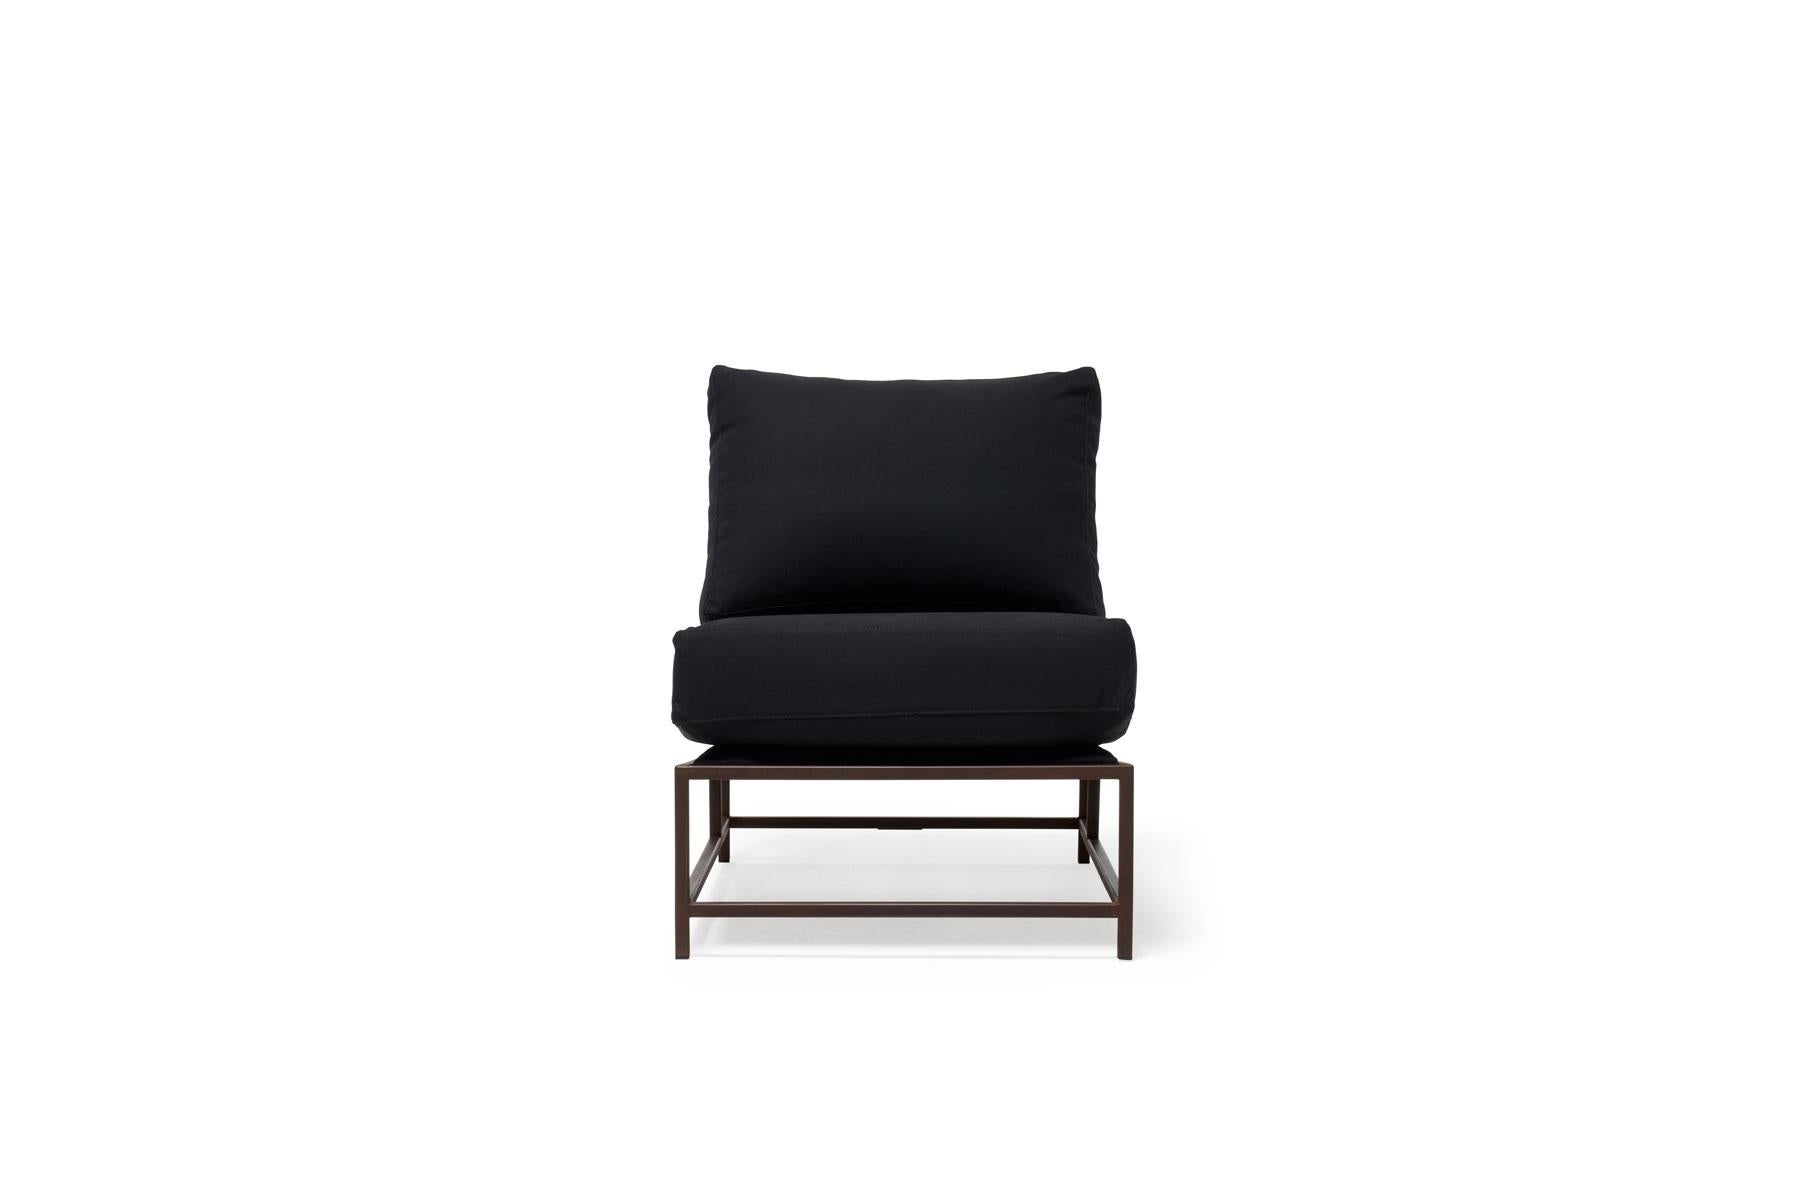 Der elegante und raffinierte Stuhl aus der Inheritance Collection von Stephen Kenn ist eine großartige Ergänzung für fast jeden Raum.

Diese Variante ist mit natürlichem Segeltuch gepolstert. Die Schaumstoff-Sitzkissen sind mit Polyfaser ummantelt